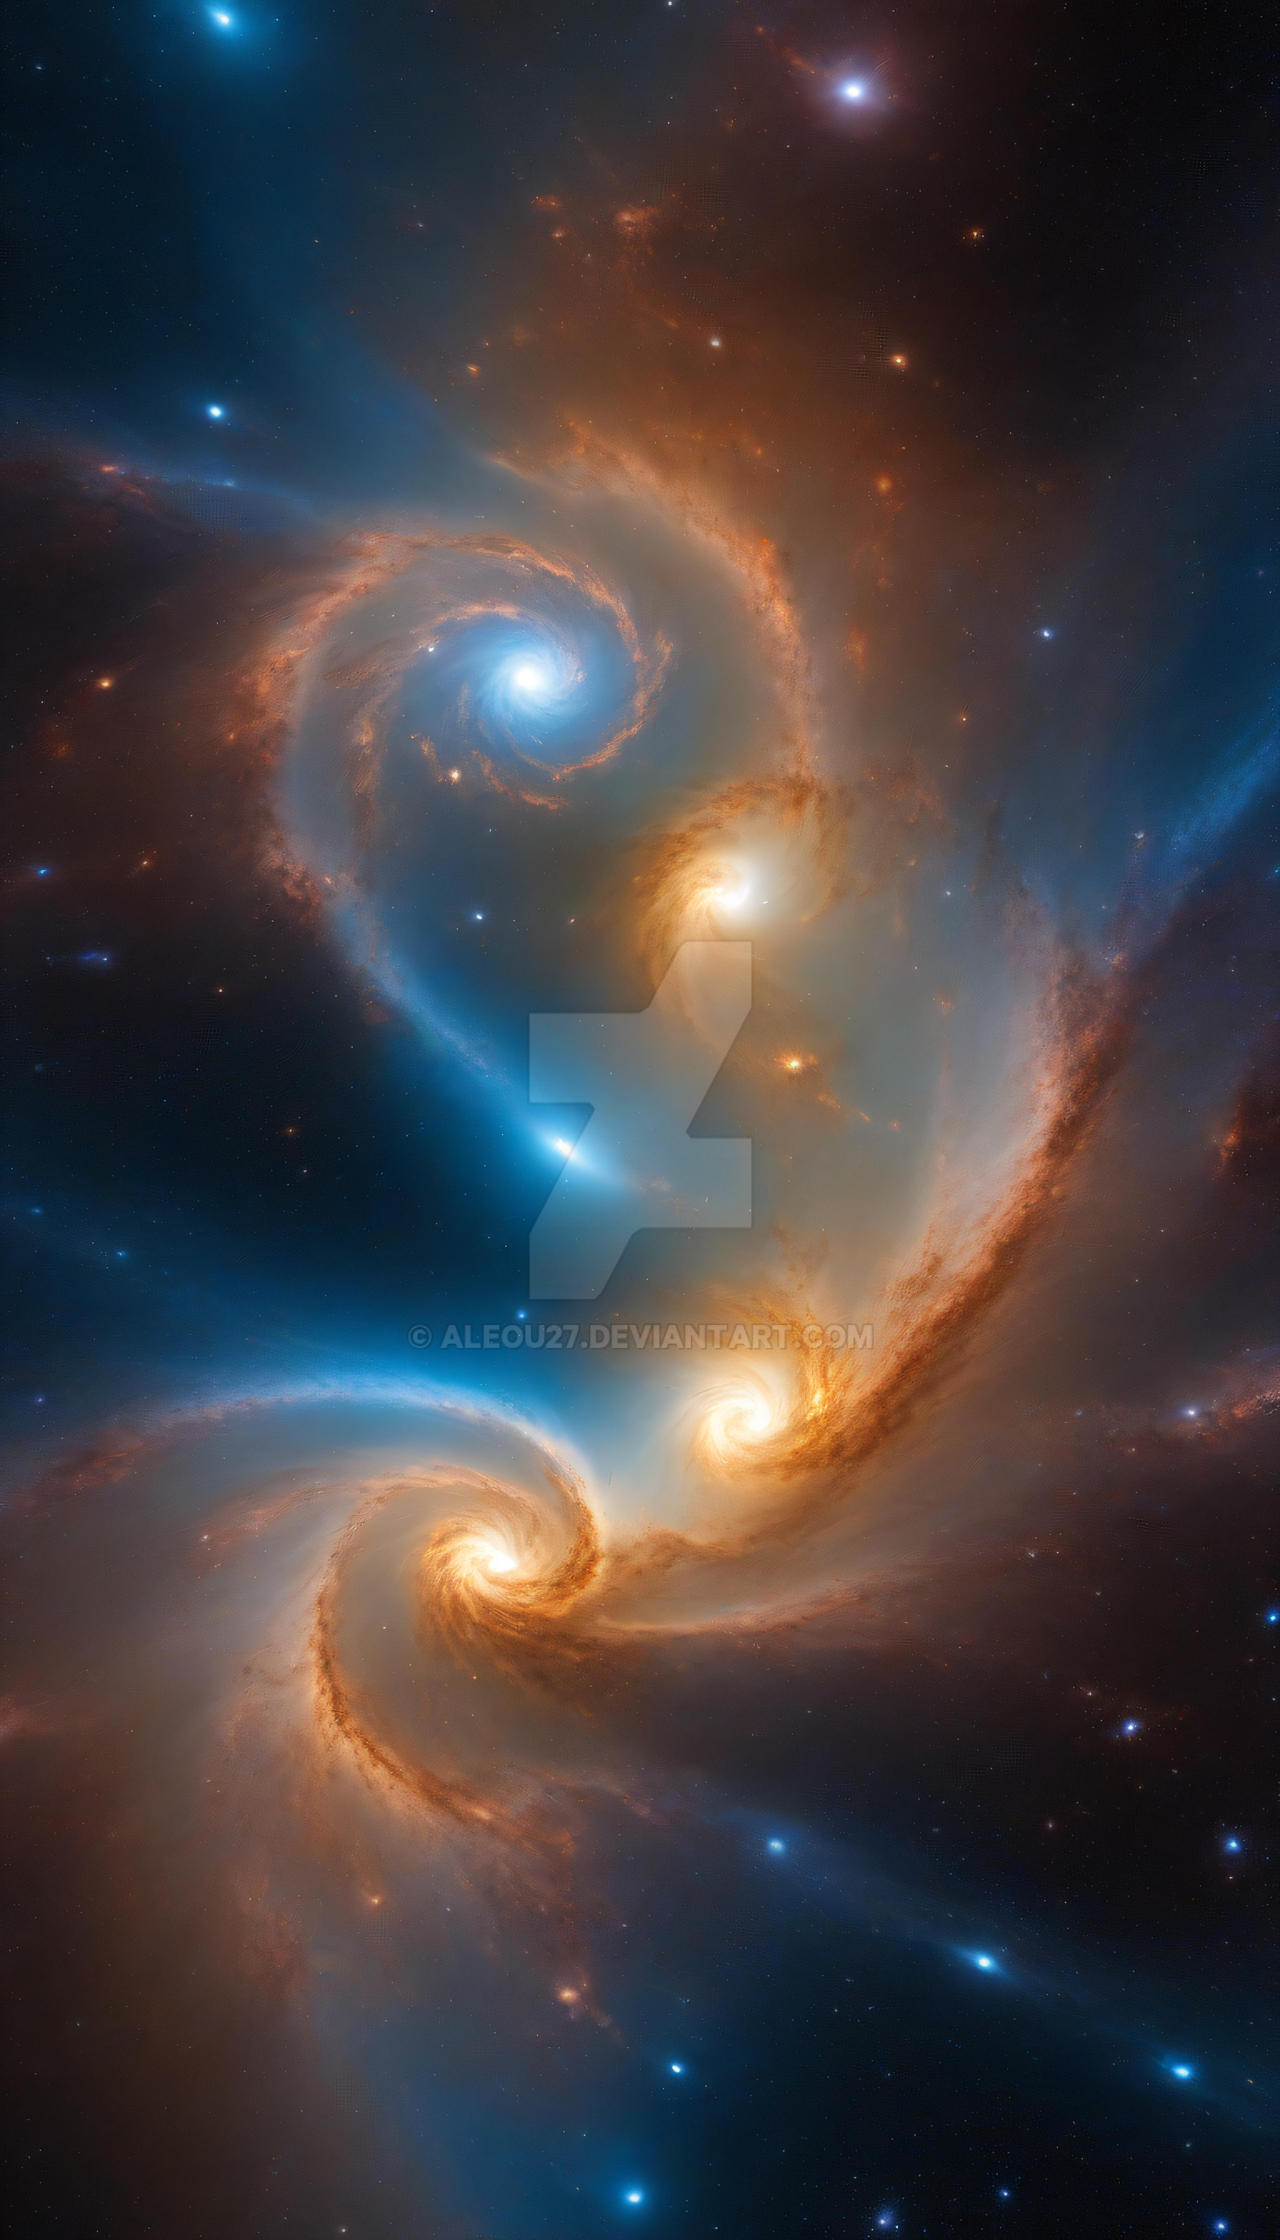 Interstellar Fusion by aleou27 on DeviantArt